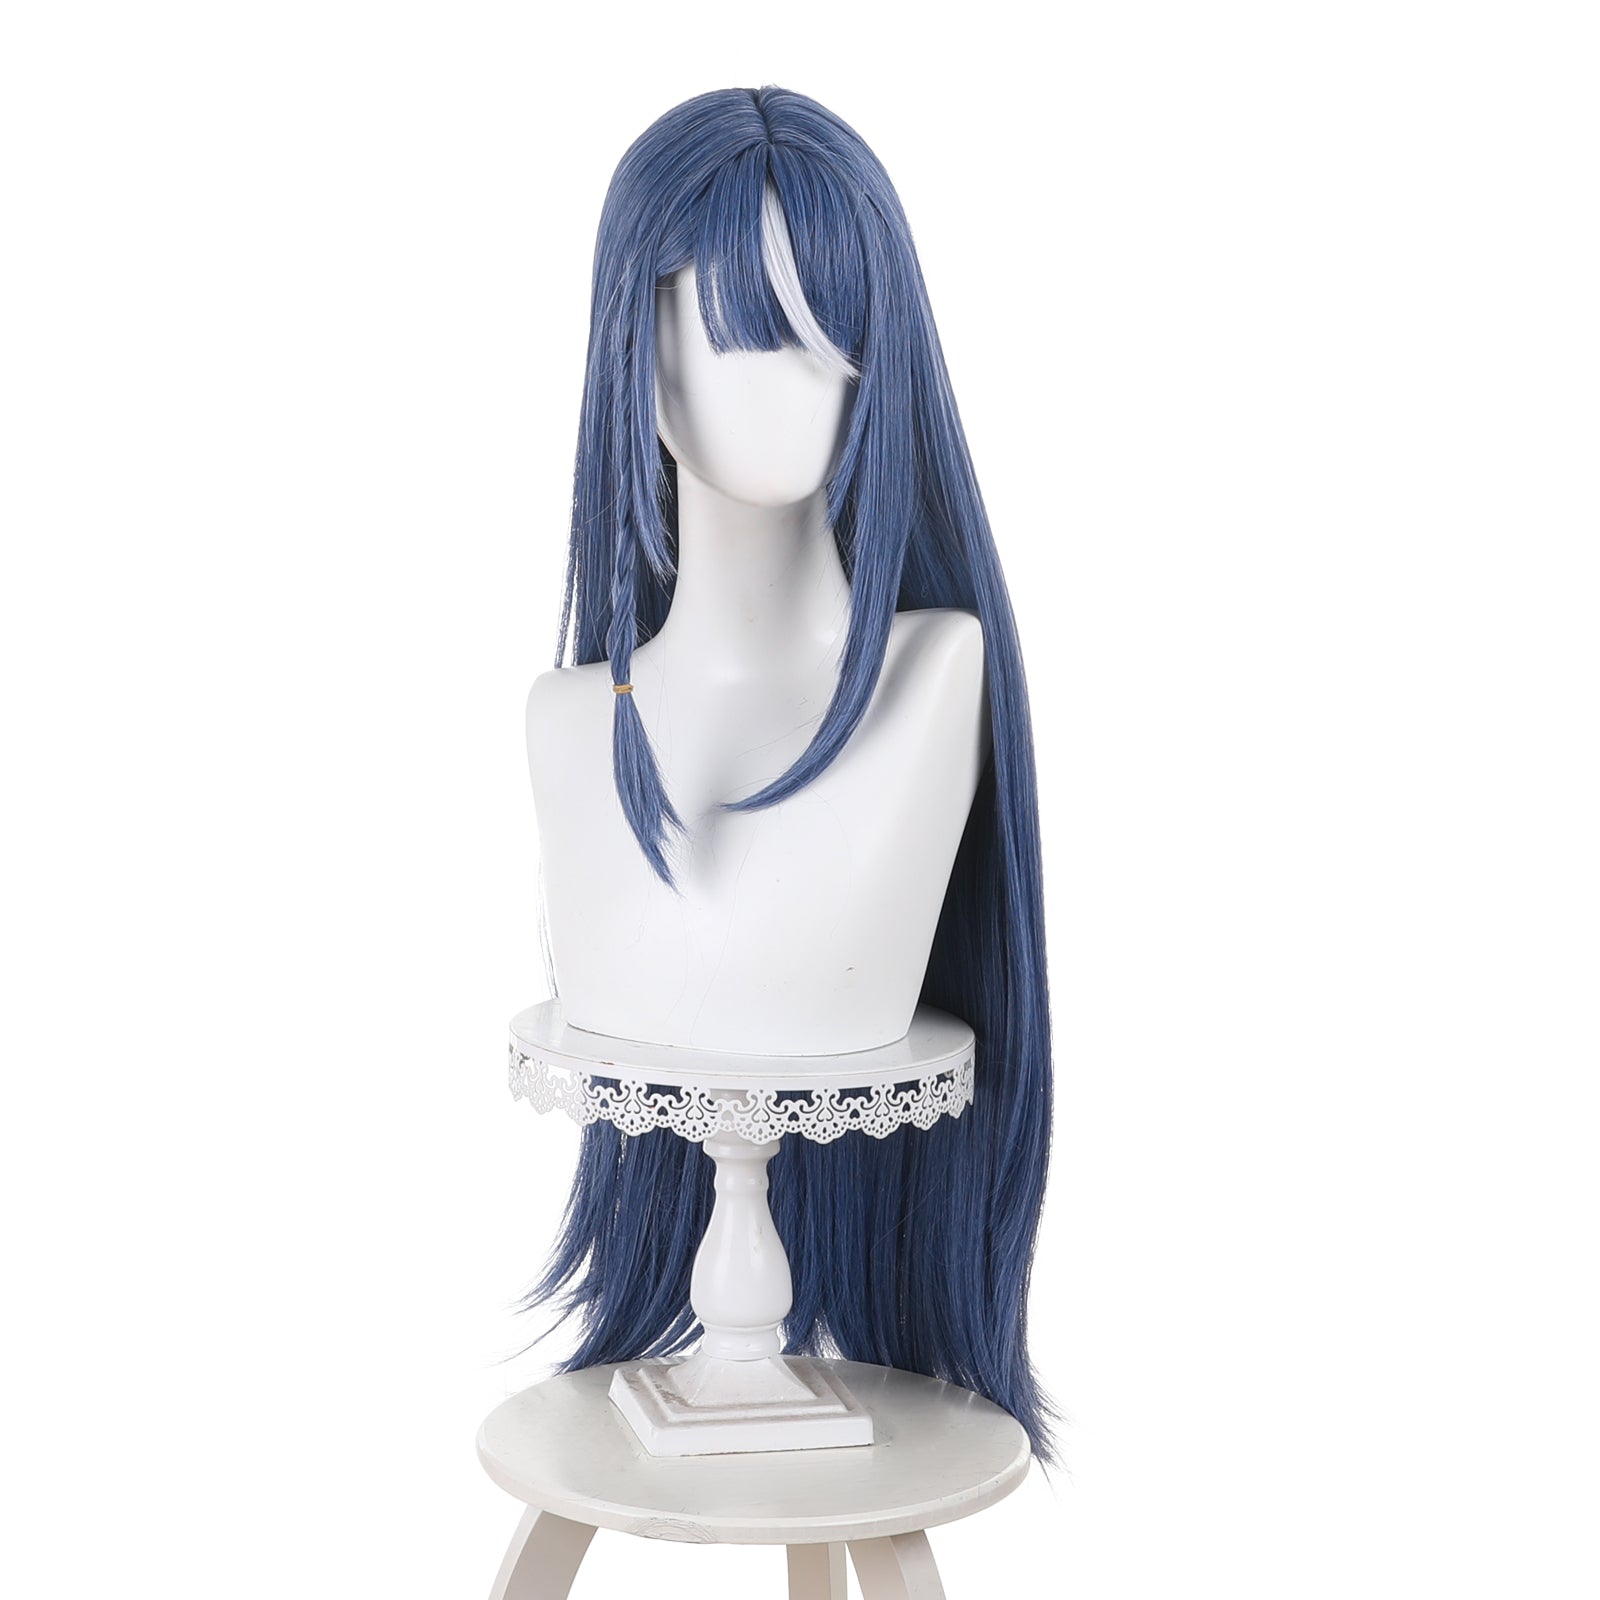 Rulercosplay Anime Virtual vtuber Plushie Kokorone Awayuki Blue Long Cosplay Wig